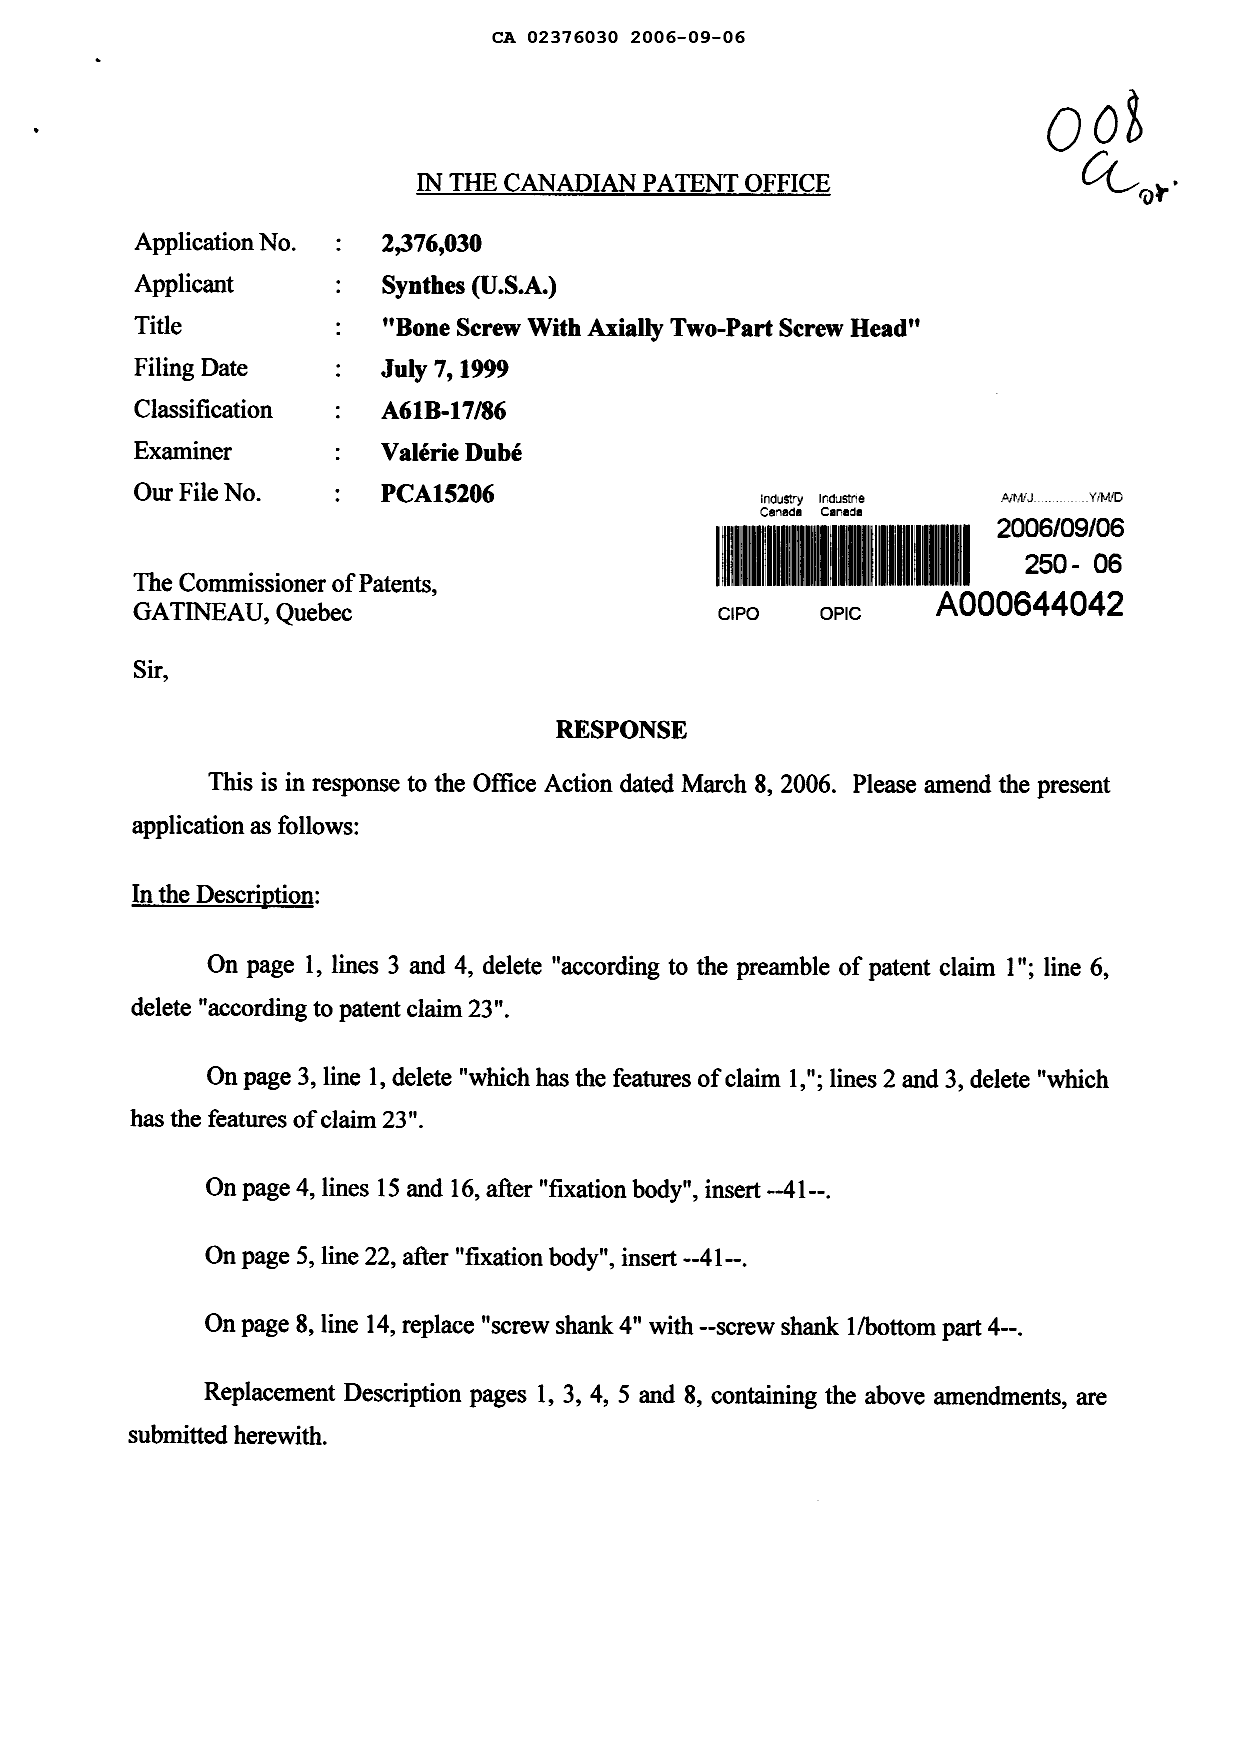 Document de brevet canadien 2376030. Poursuite-Amendment 20060906. Image 1 de 16